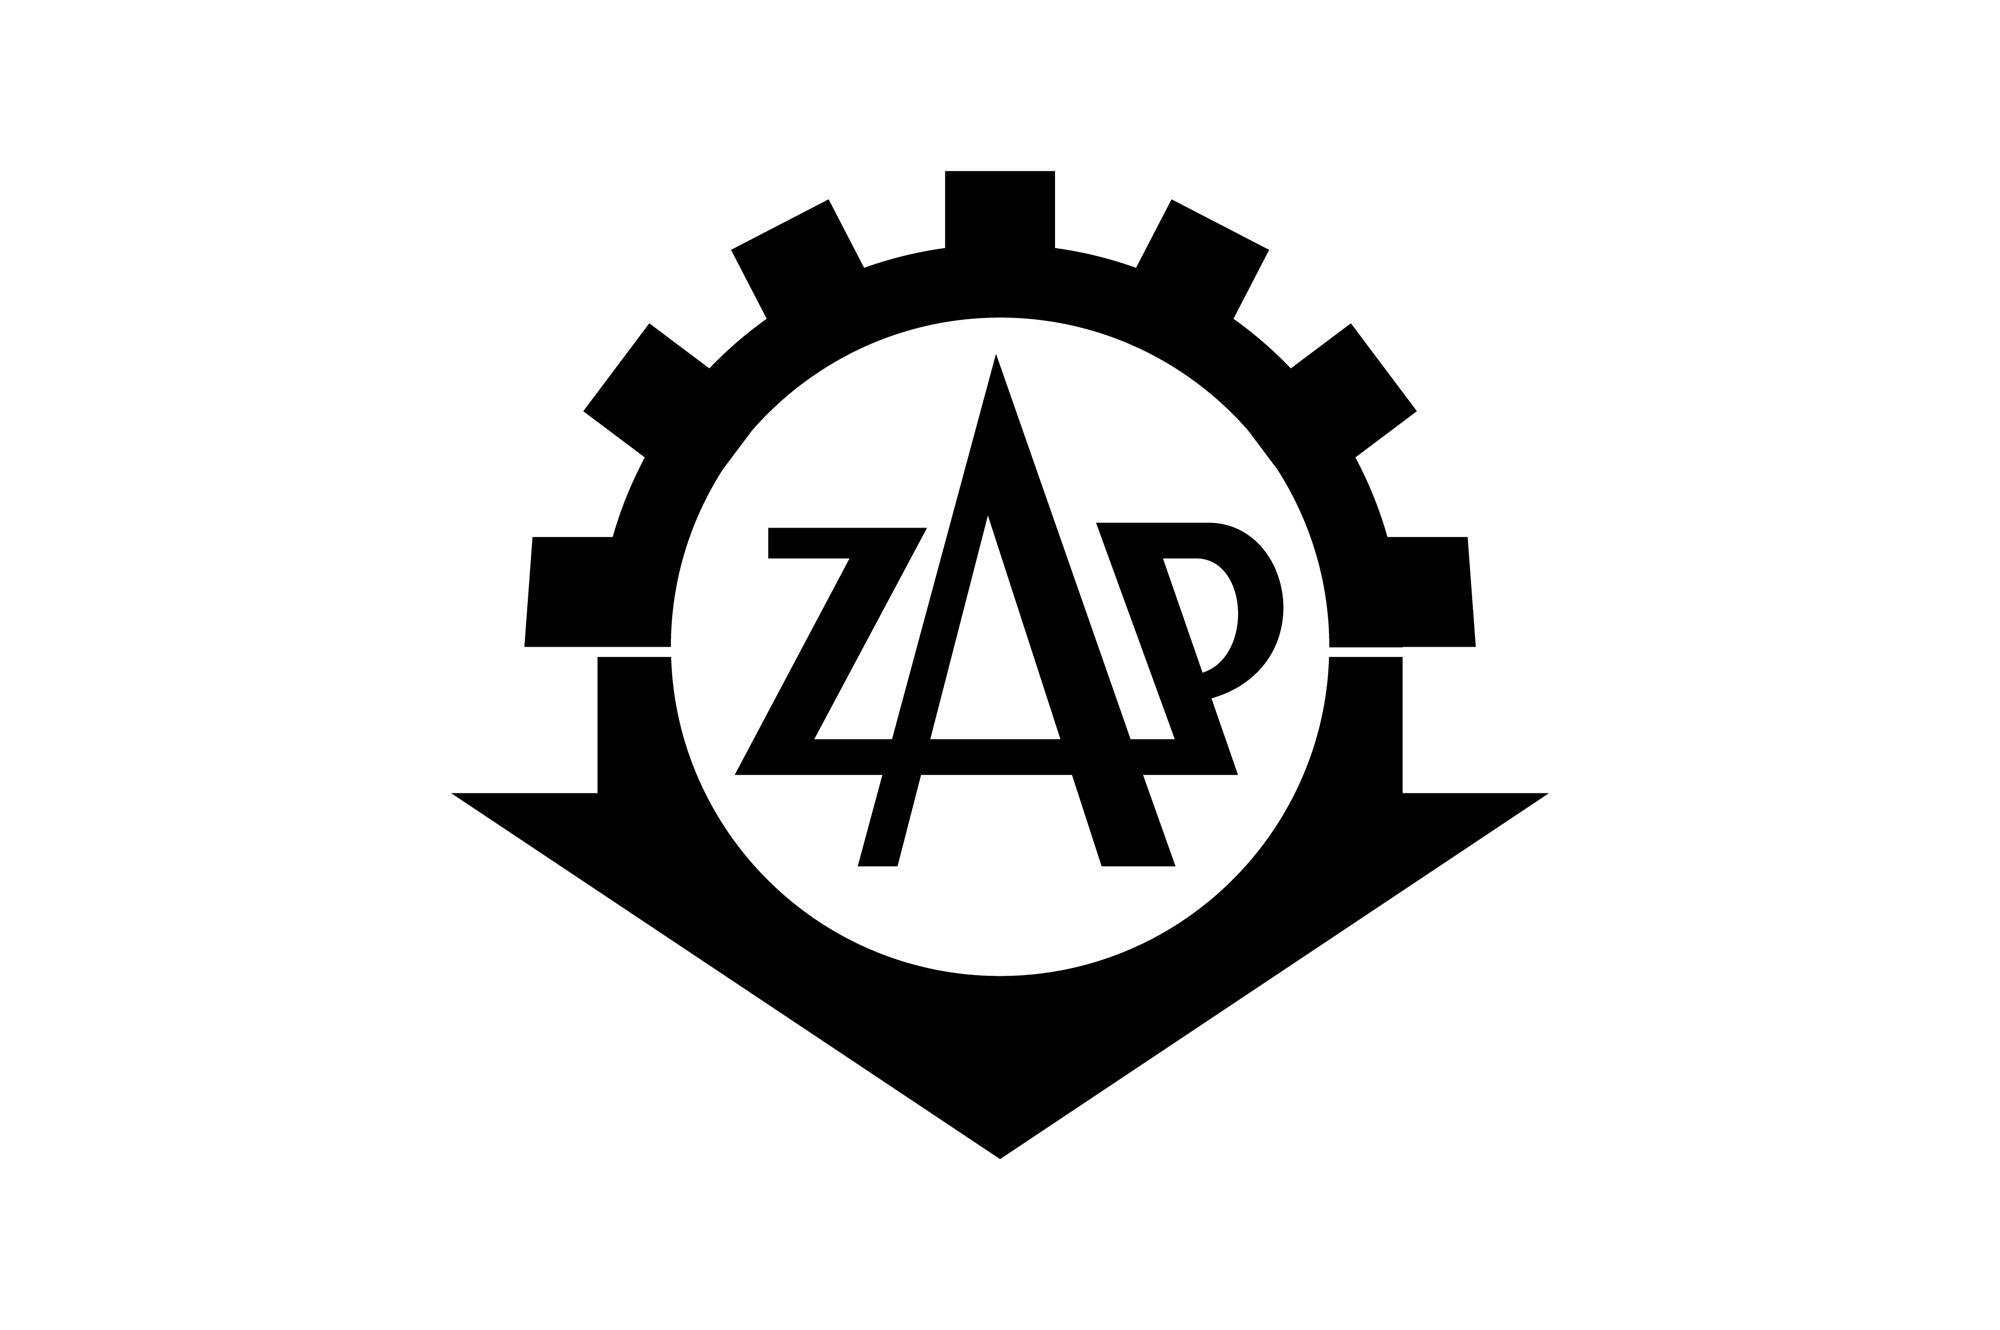 ZAP - logo stare PLANSZA 30x30cm EDYCJA